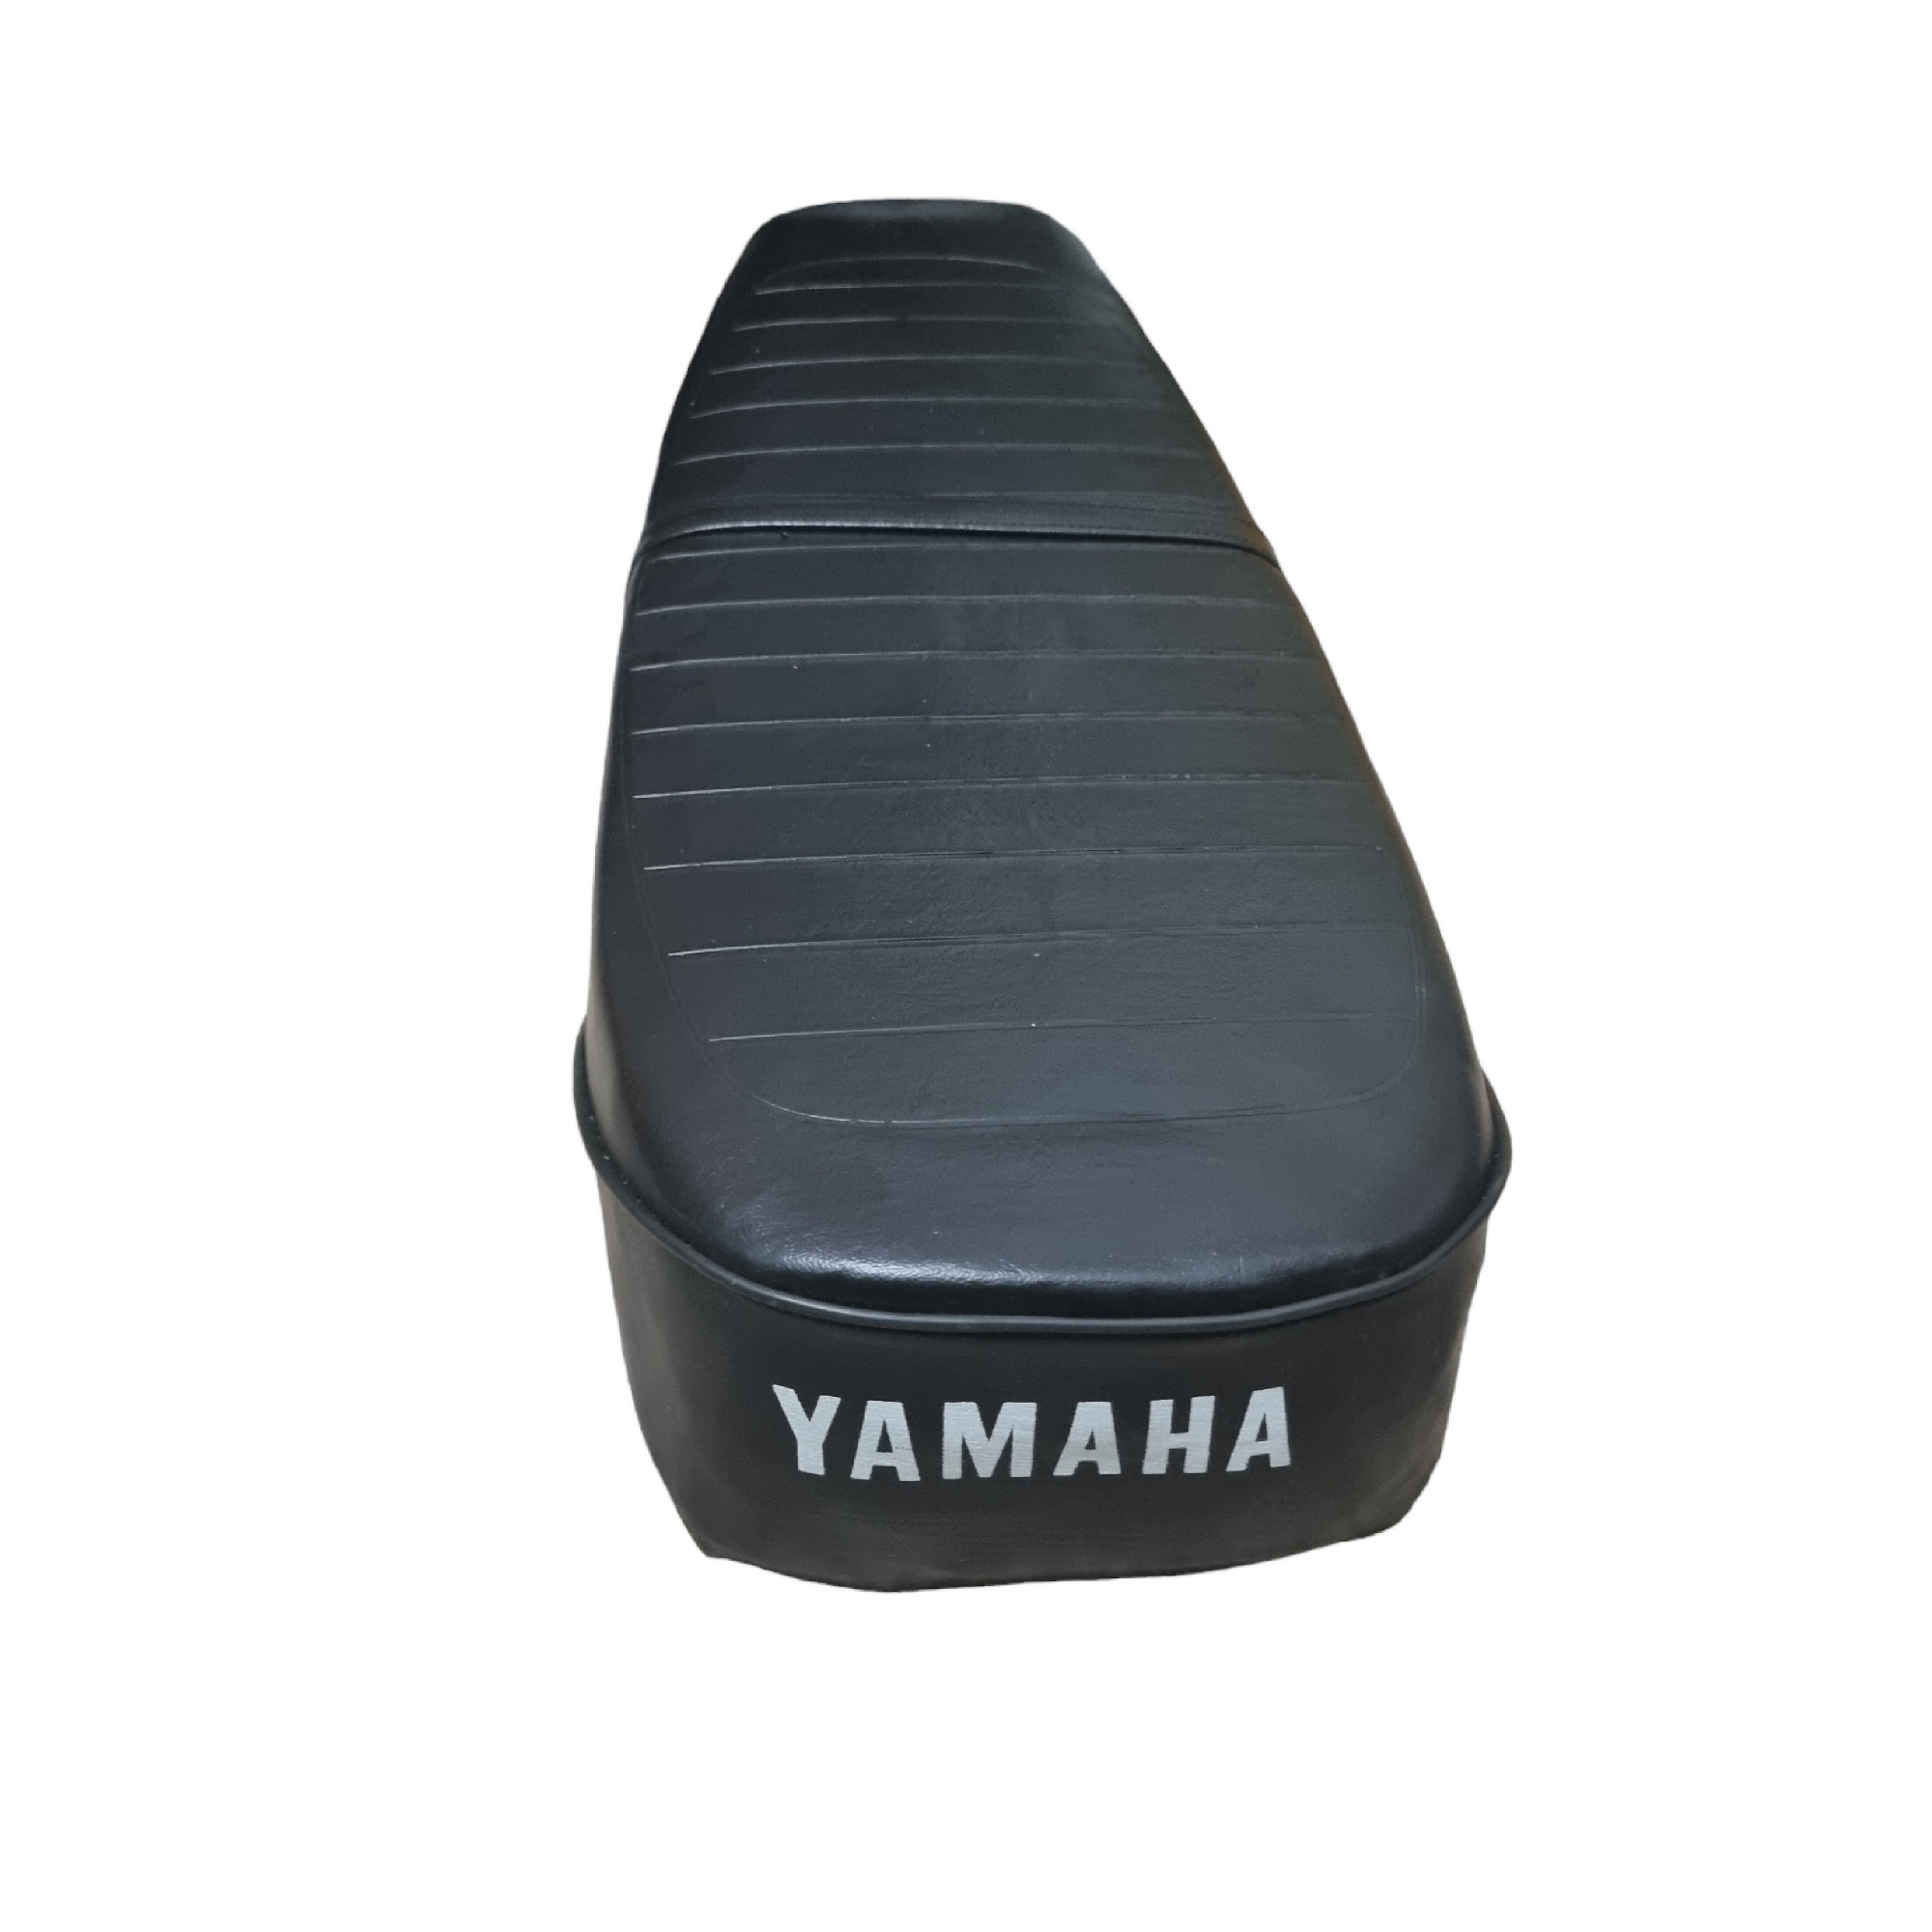 زین موتورسیکلت مدل YB125 مناسب برای یاماها 125